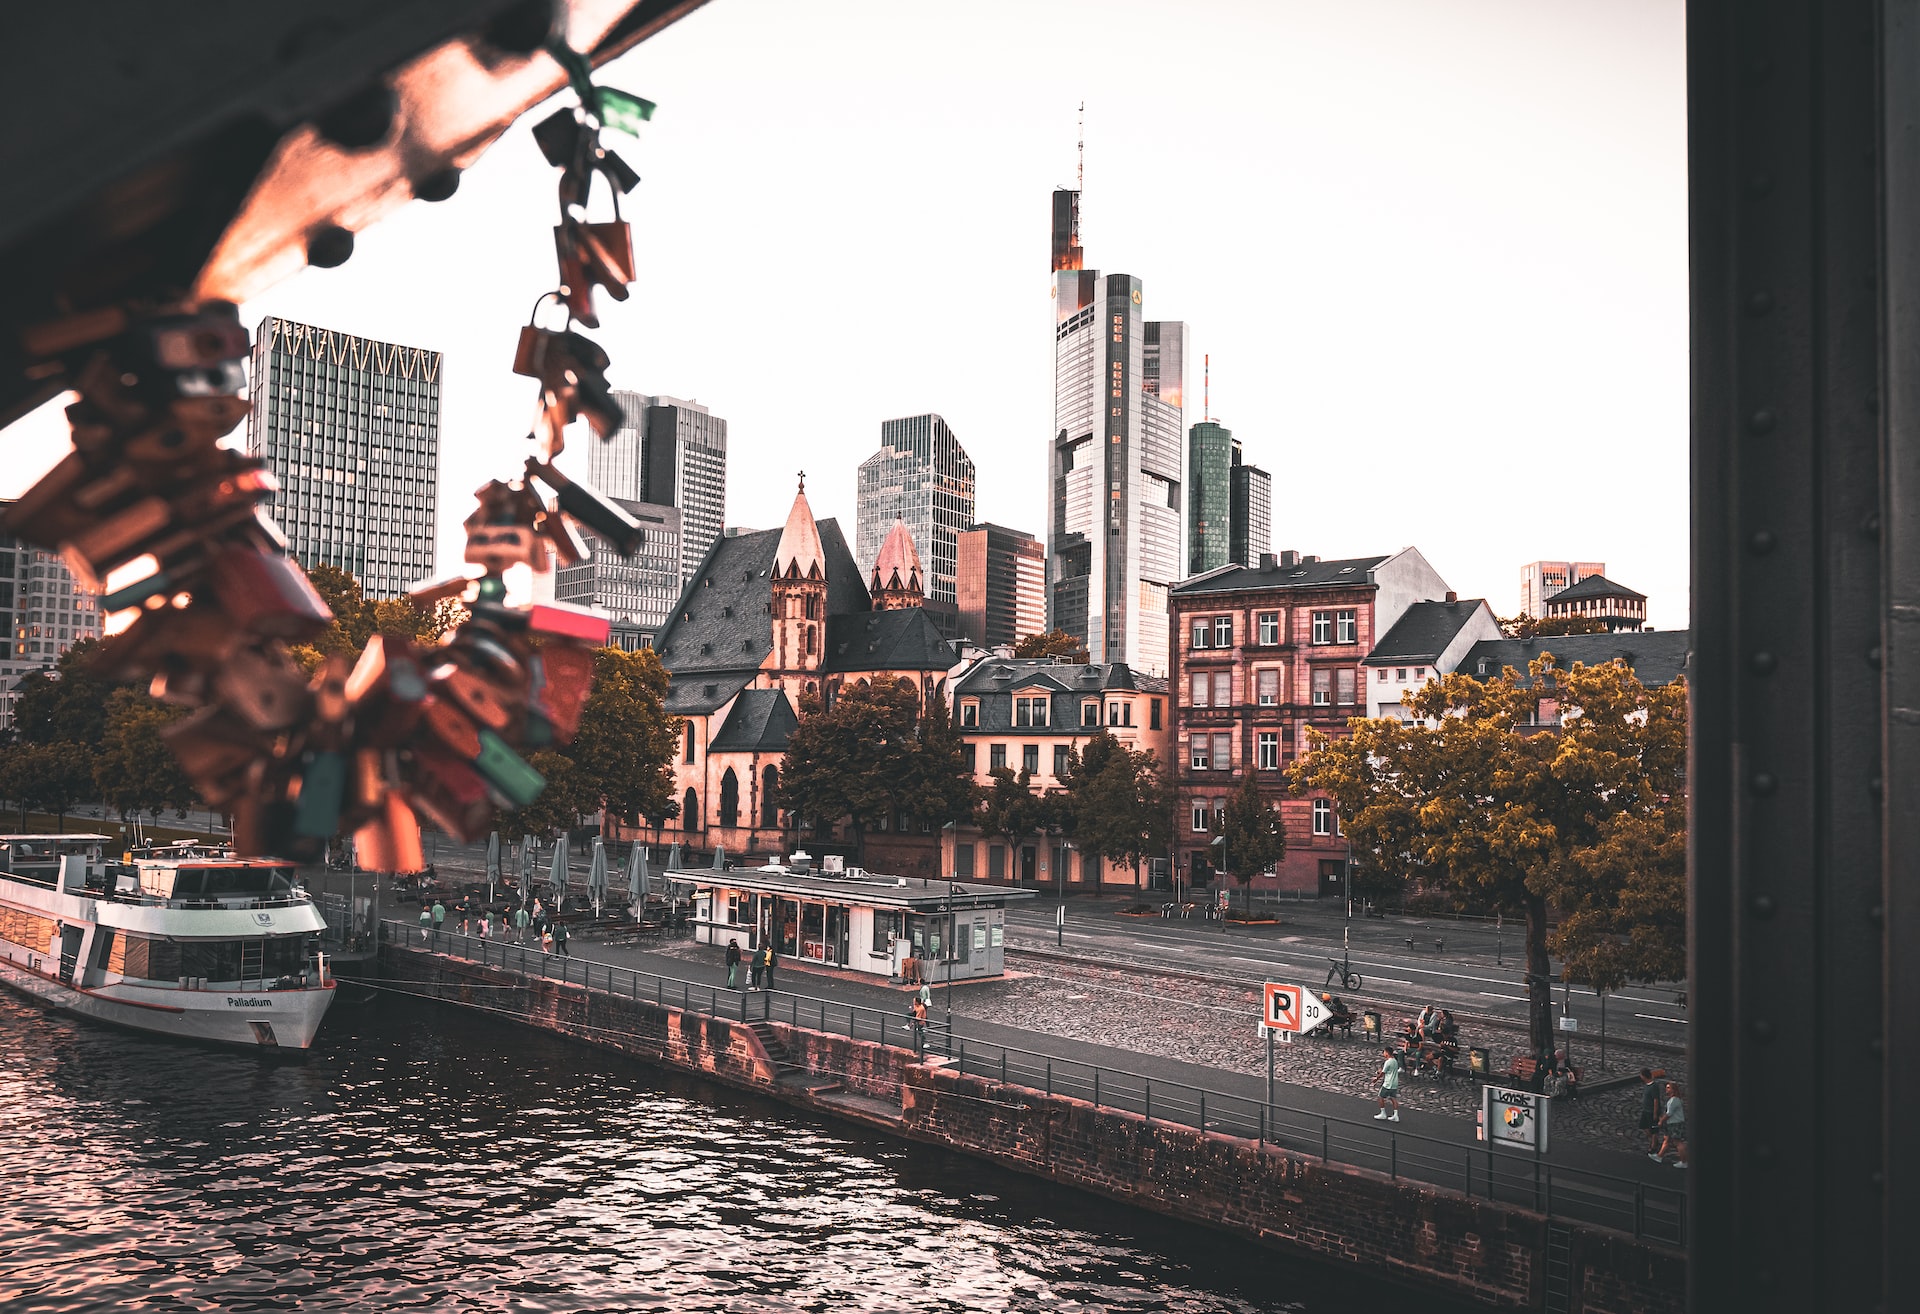 Romantischer Blick auf die Frankfurter Skyline vom Fluss aus